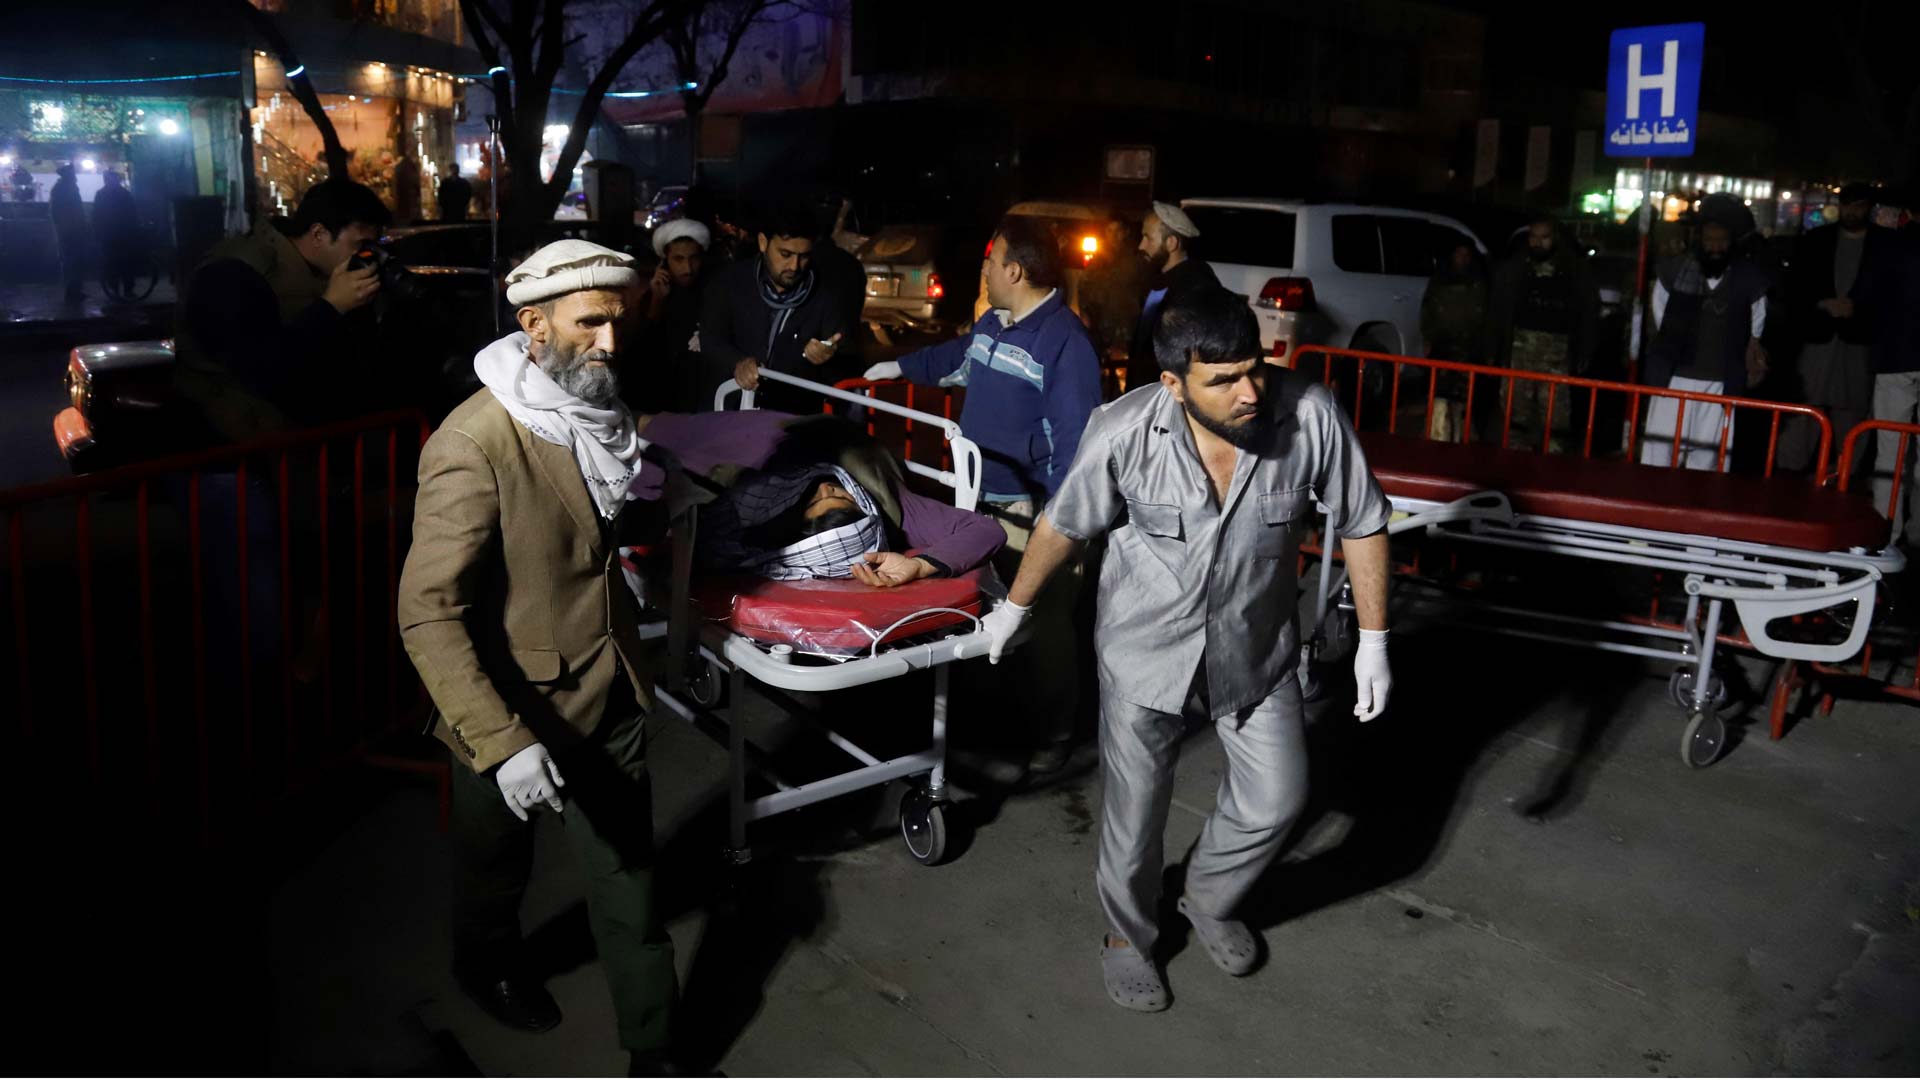 Un ataque suicida durante una ceremonia religiosa causa al menos 43 muertos en Kabul